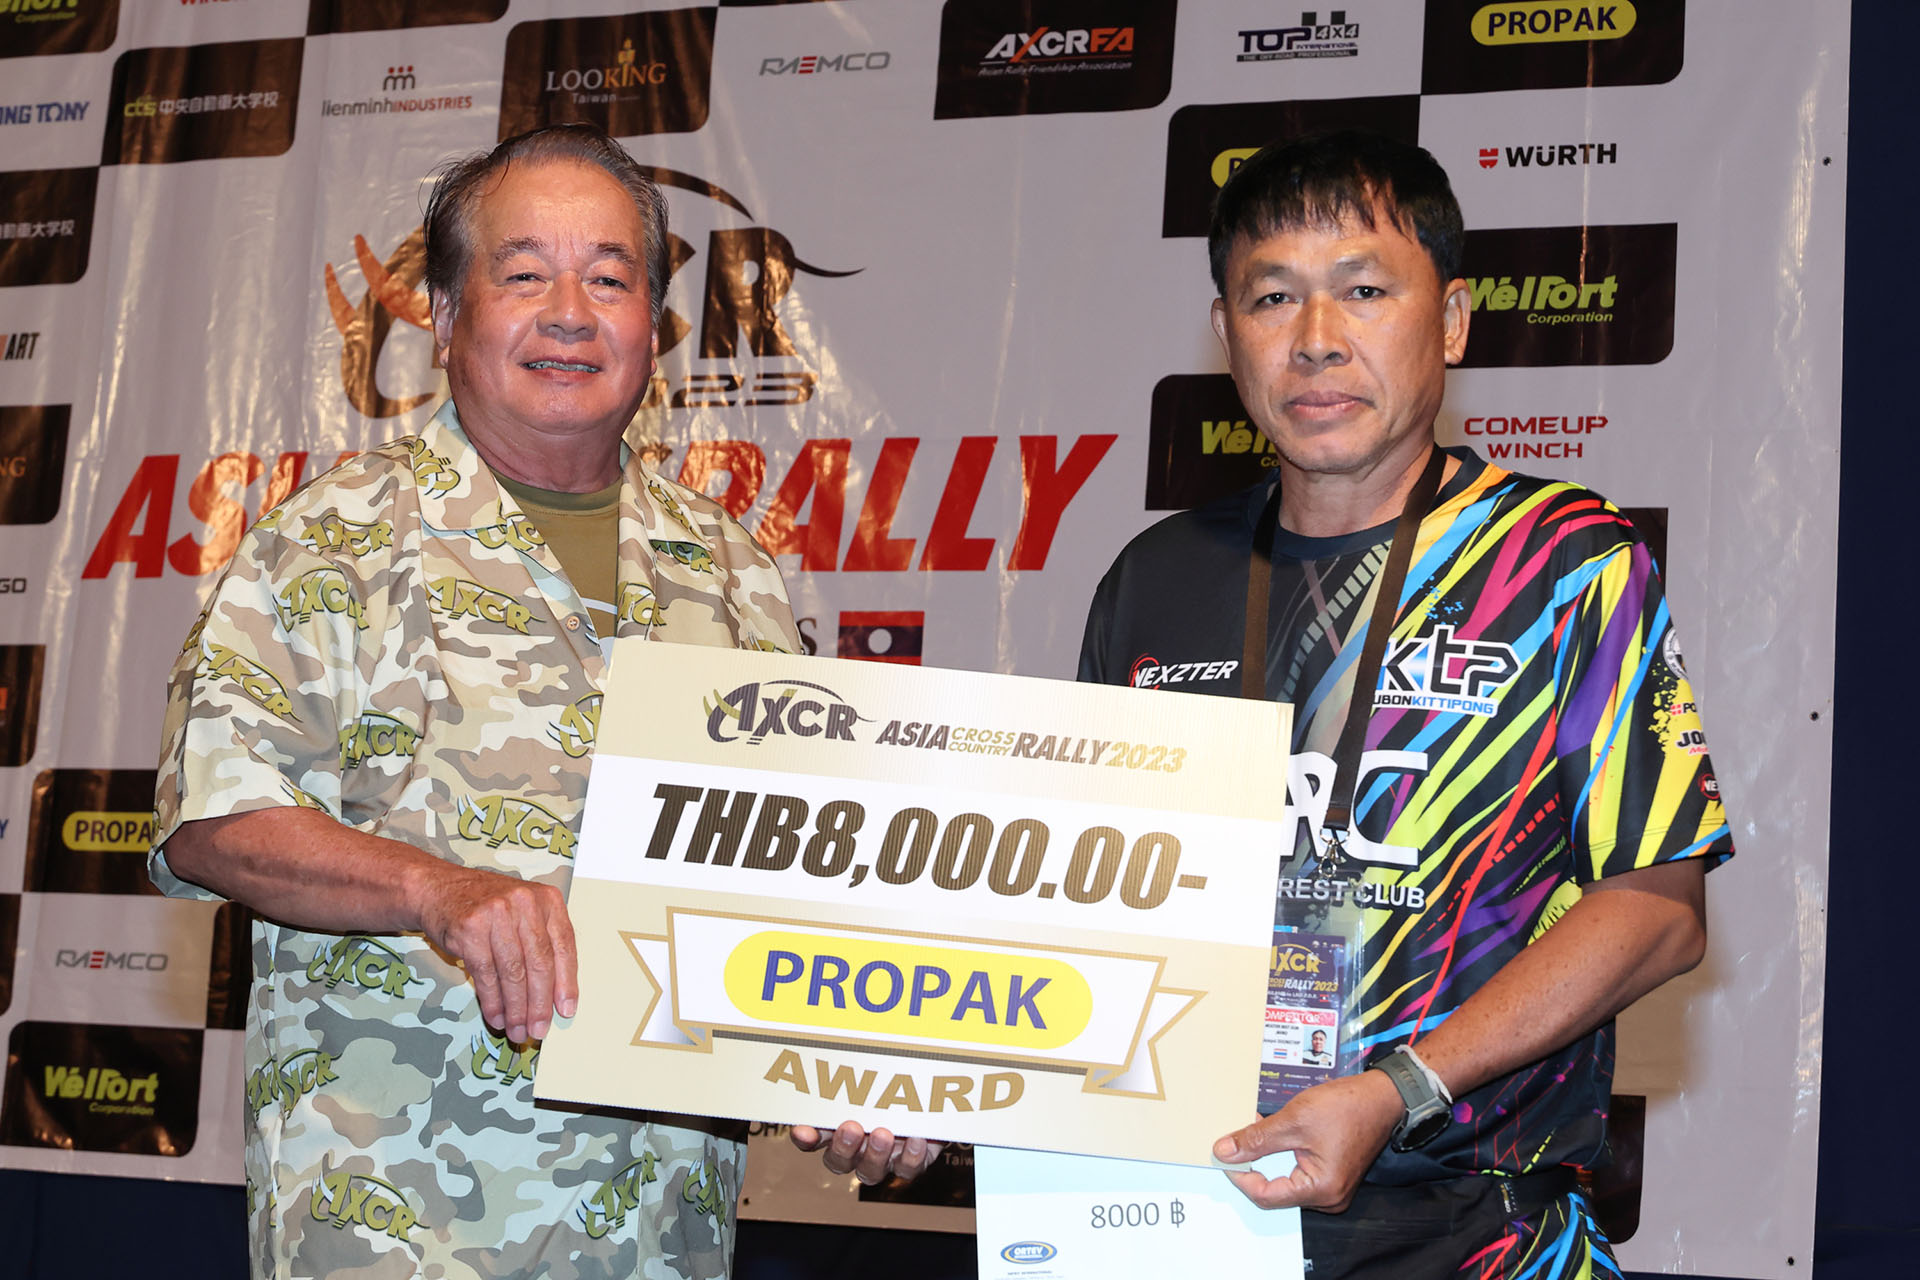 PROPAK Award 2nd: #108 Theerapong Pimpawat / Jumpol DOUNGTHIP (NEXZTER REST CLUB (NXRC))